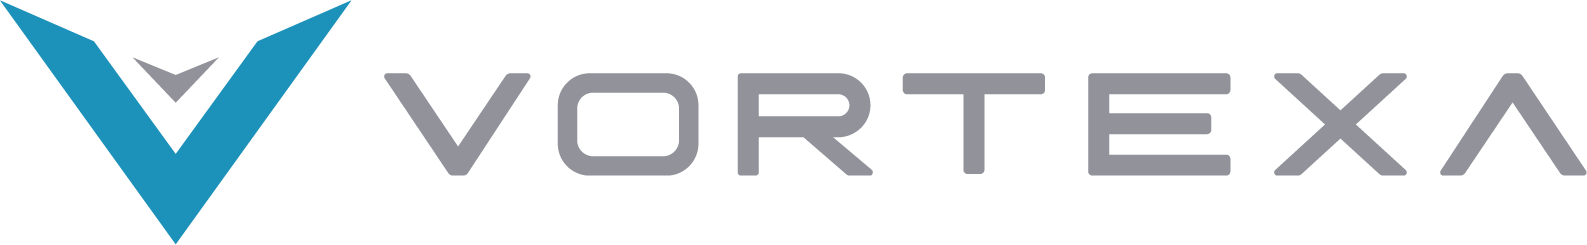 Vortexa Logo Long Dark (1)